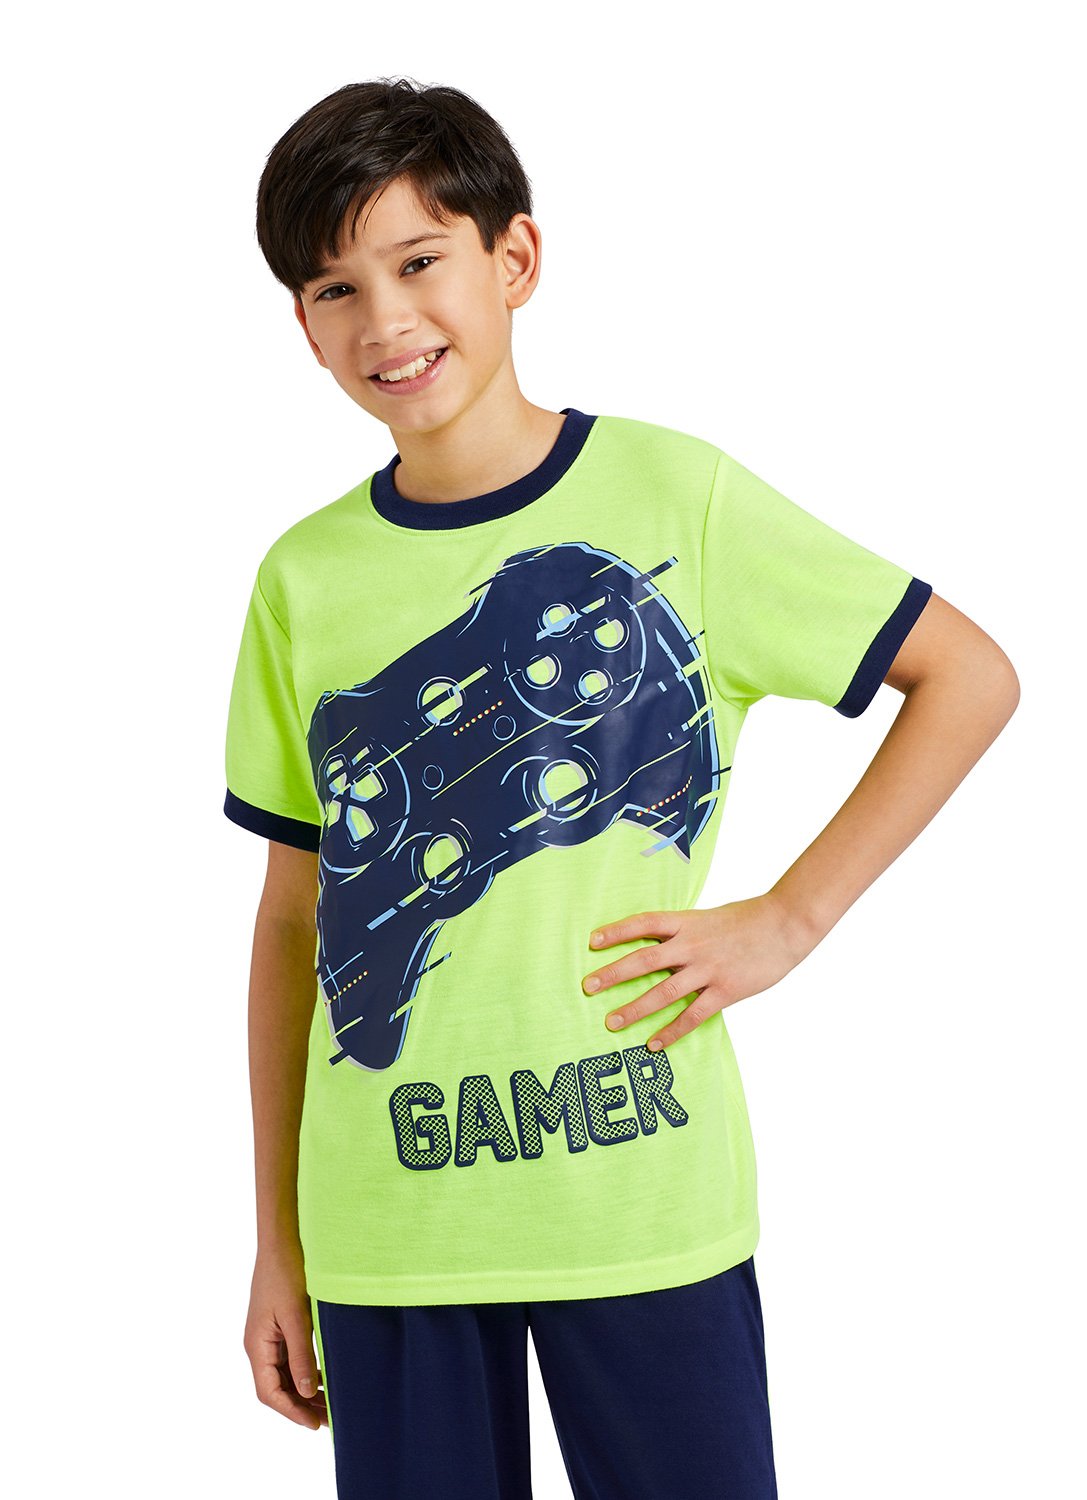 Boy wearing Gamer Print Top